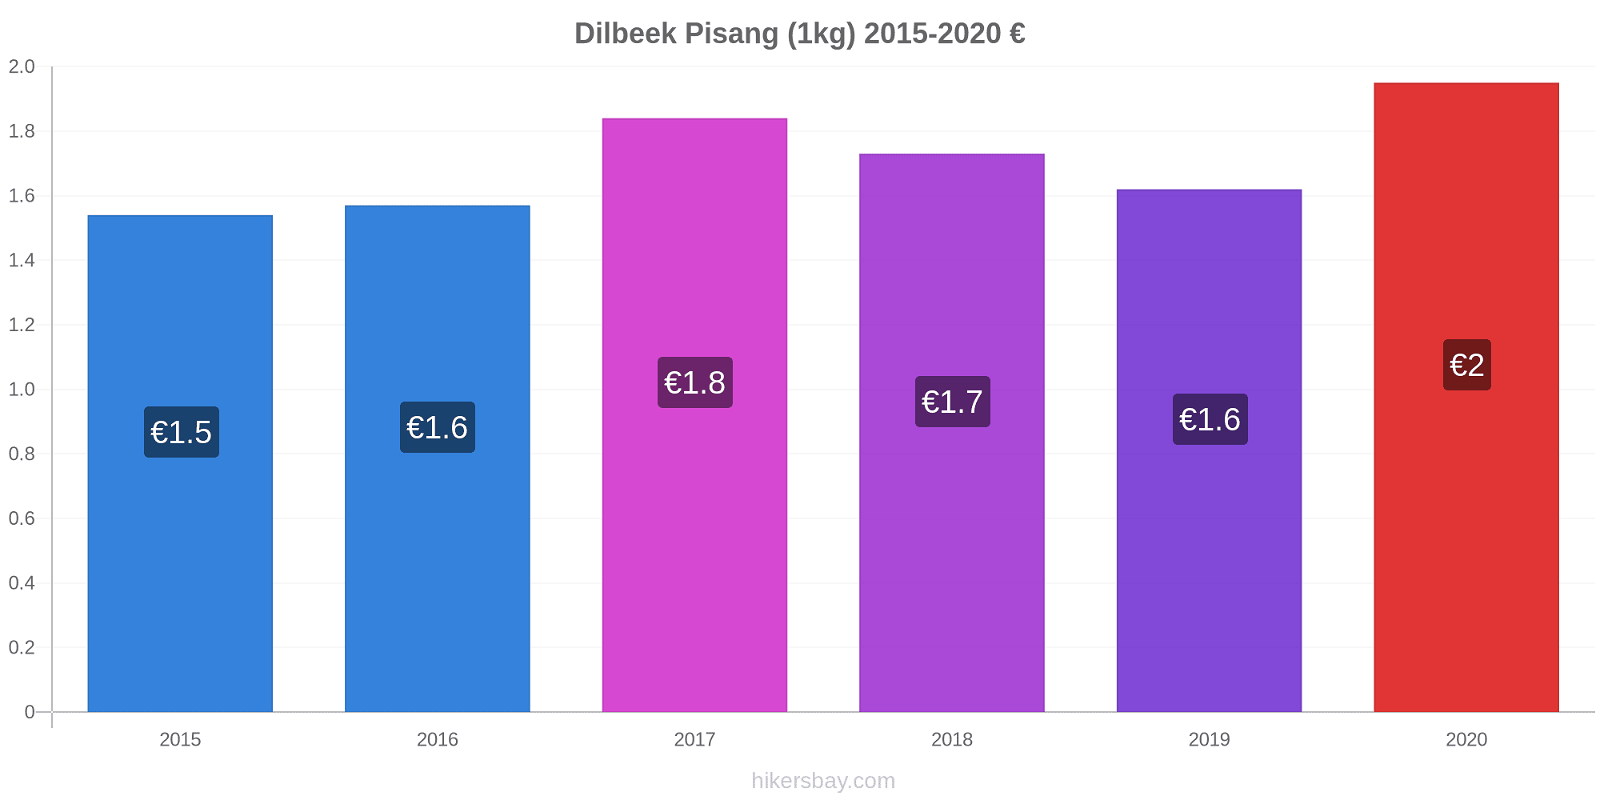 Dilbeek perubahan harga Pisang (1kg) hikersbay.com